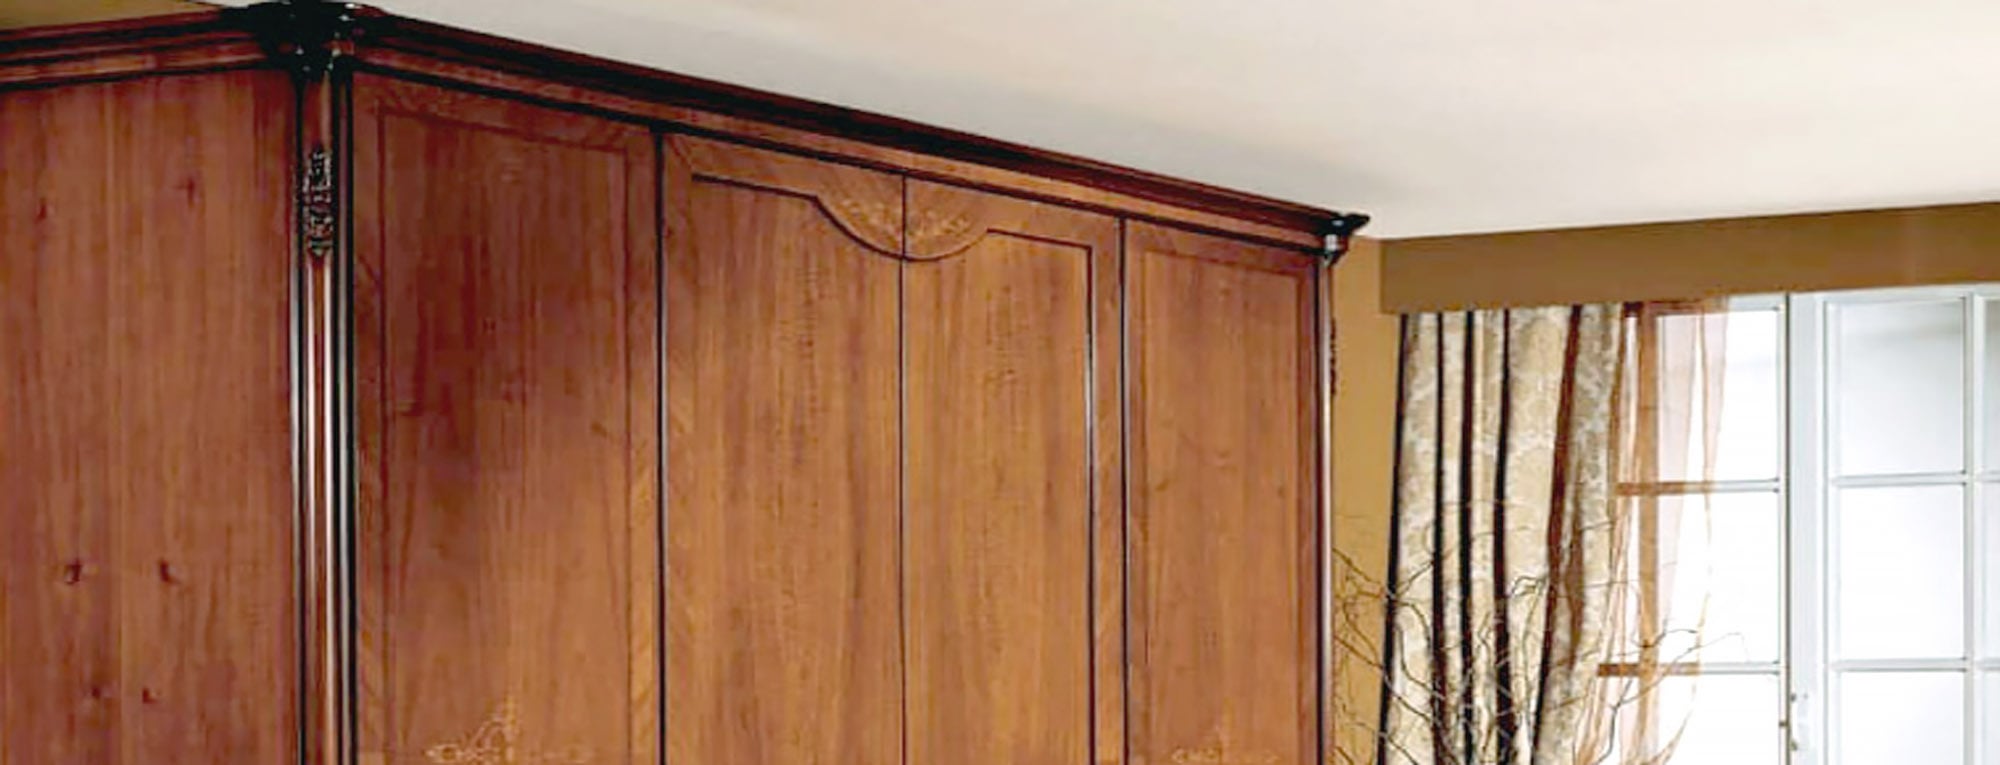 اتاق دیزاین شده با کمد چوبی کلاسیک